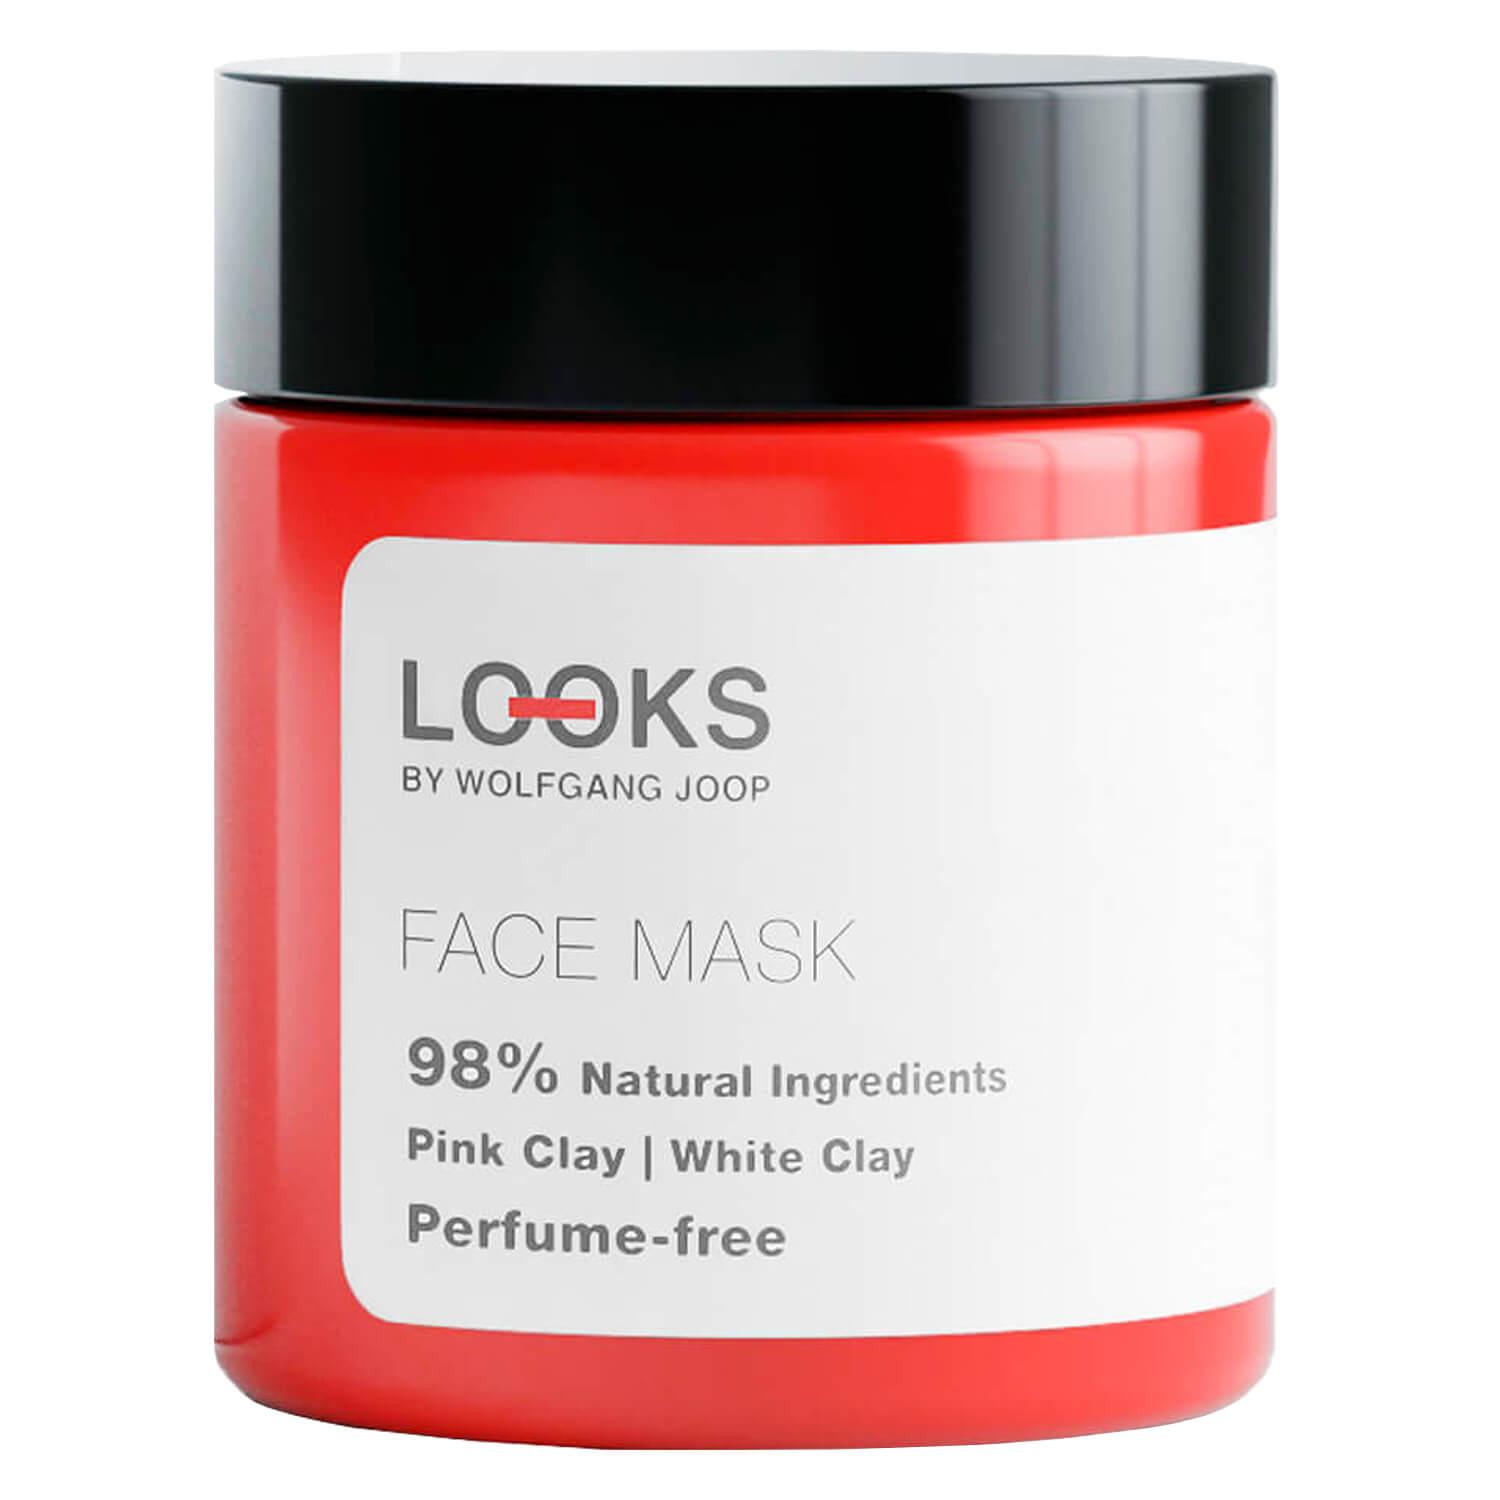 LOOKS Skincare - Face Mask